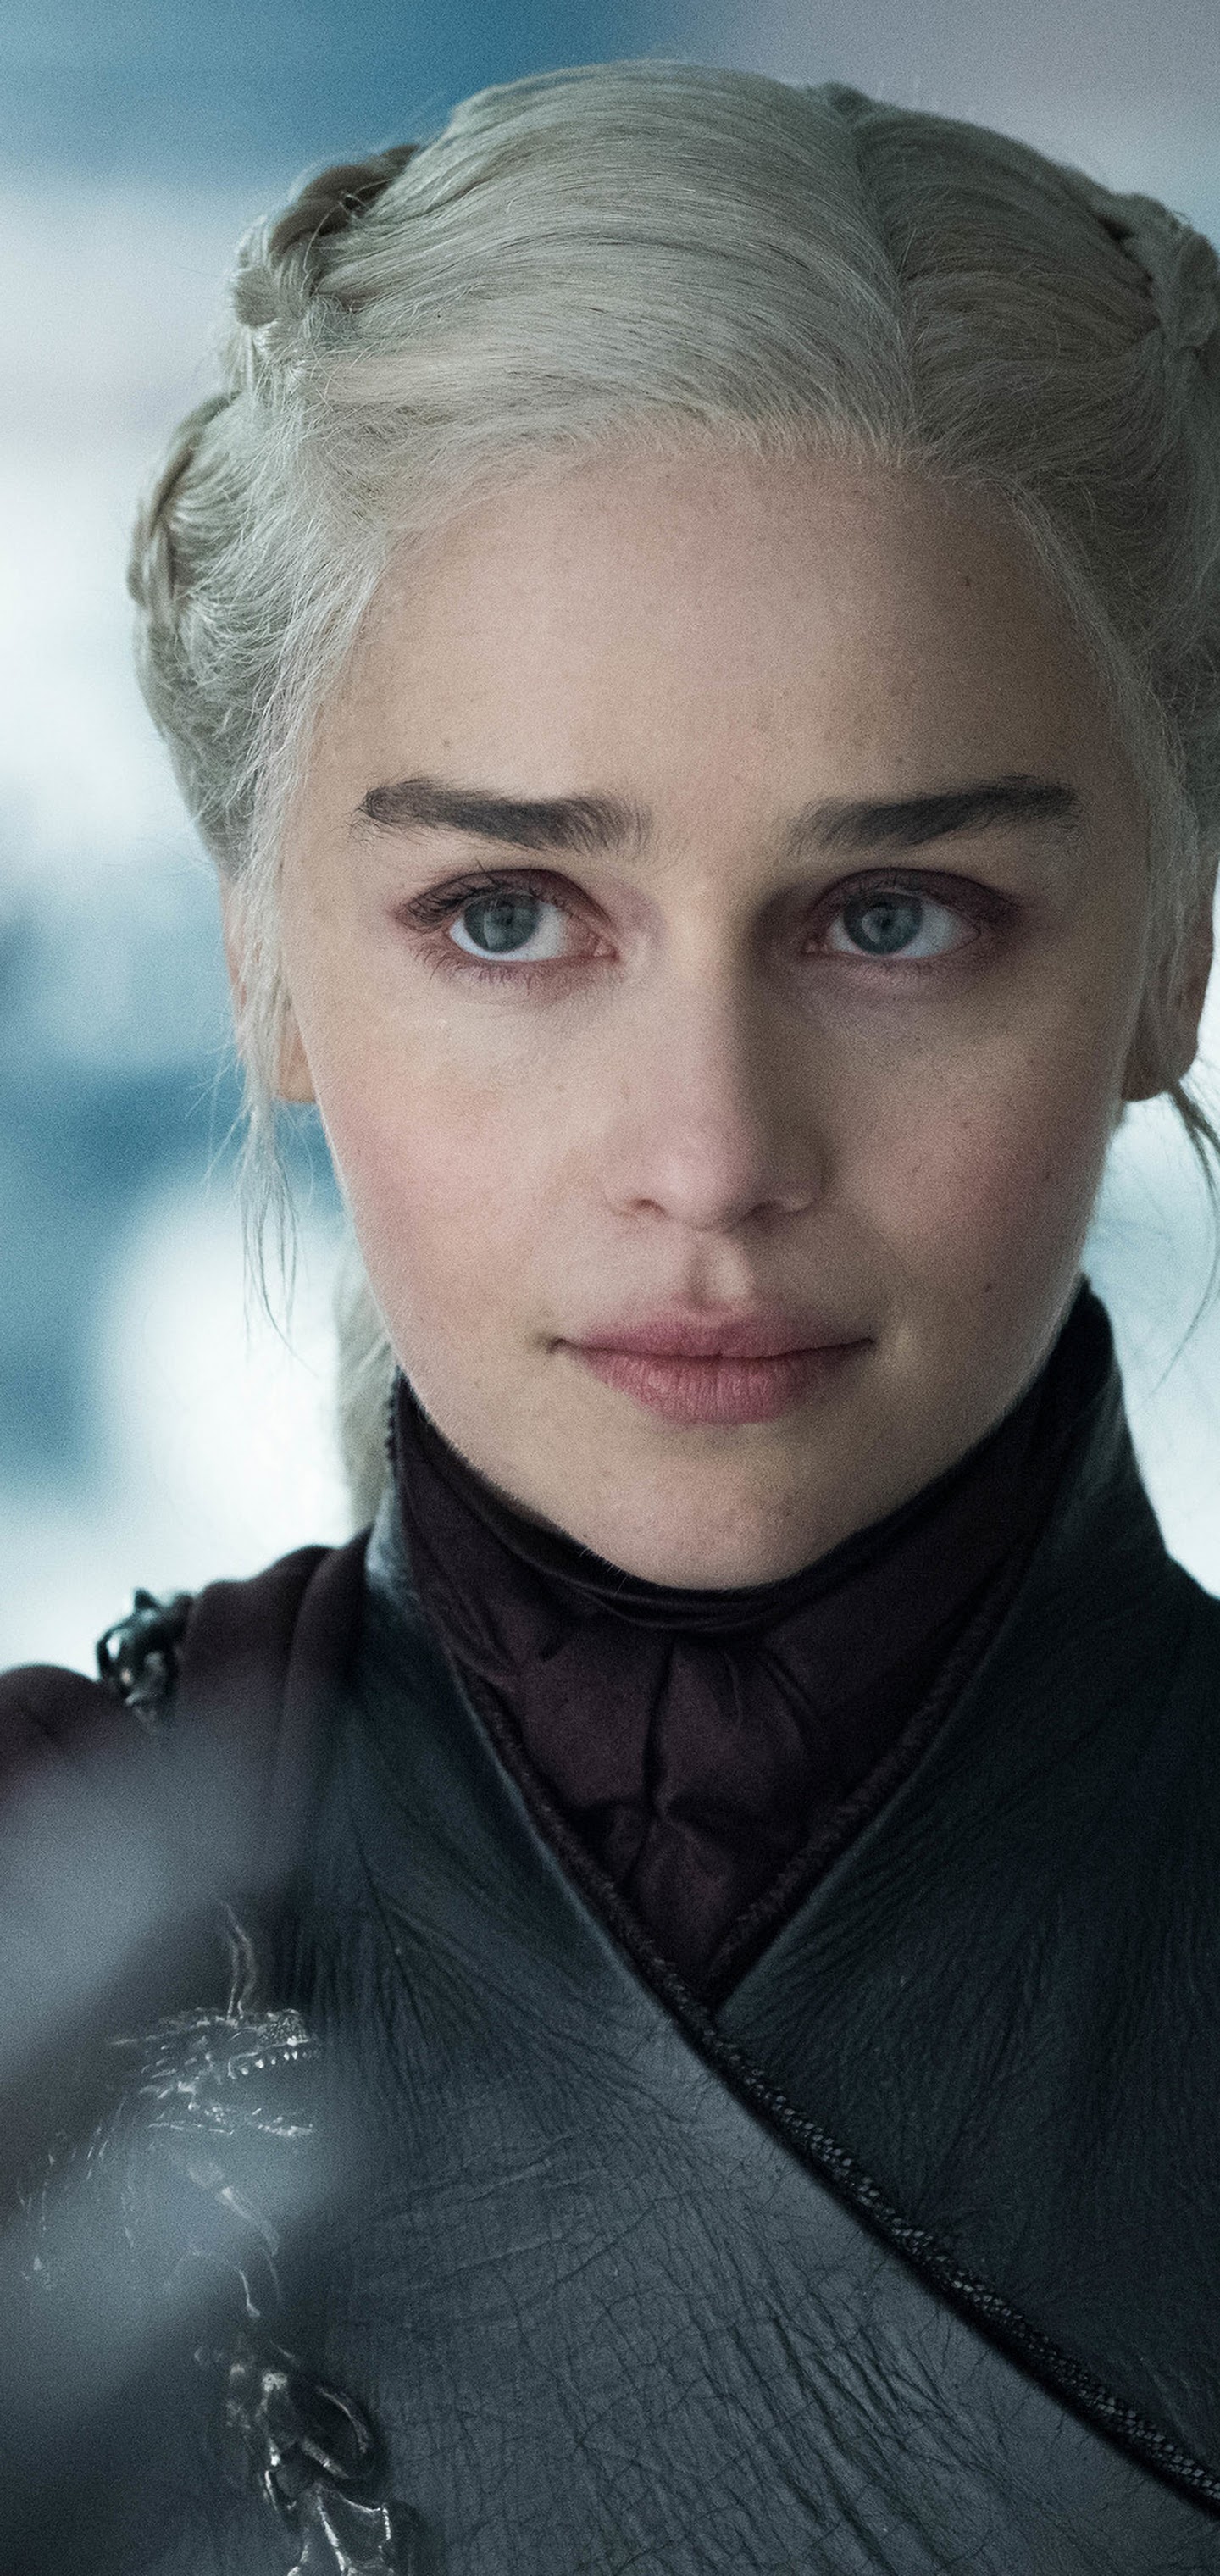 Emilia Clarke As Daenerys Targaryen In Got 8 Wallpapers